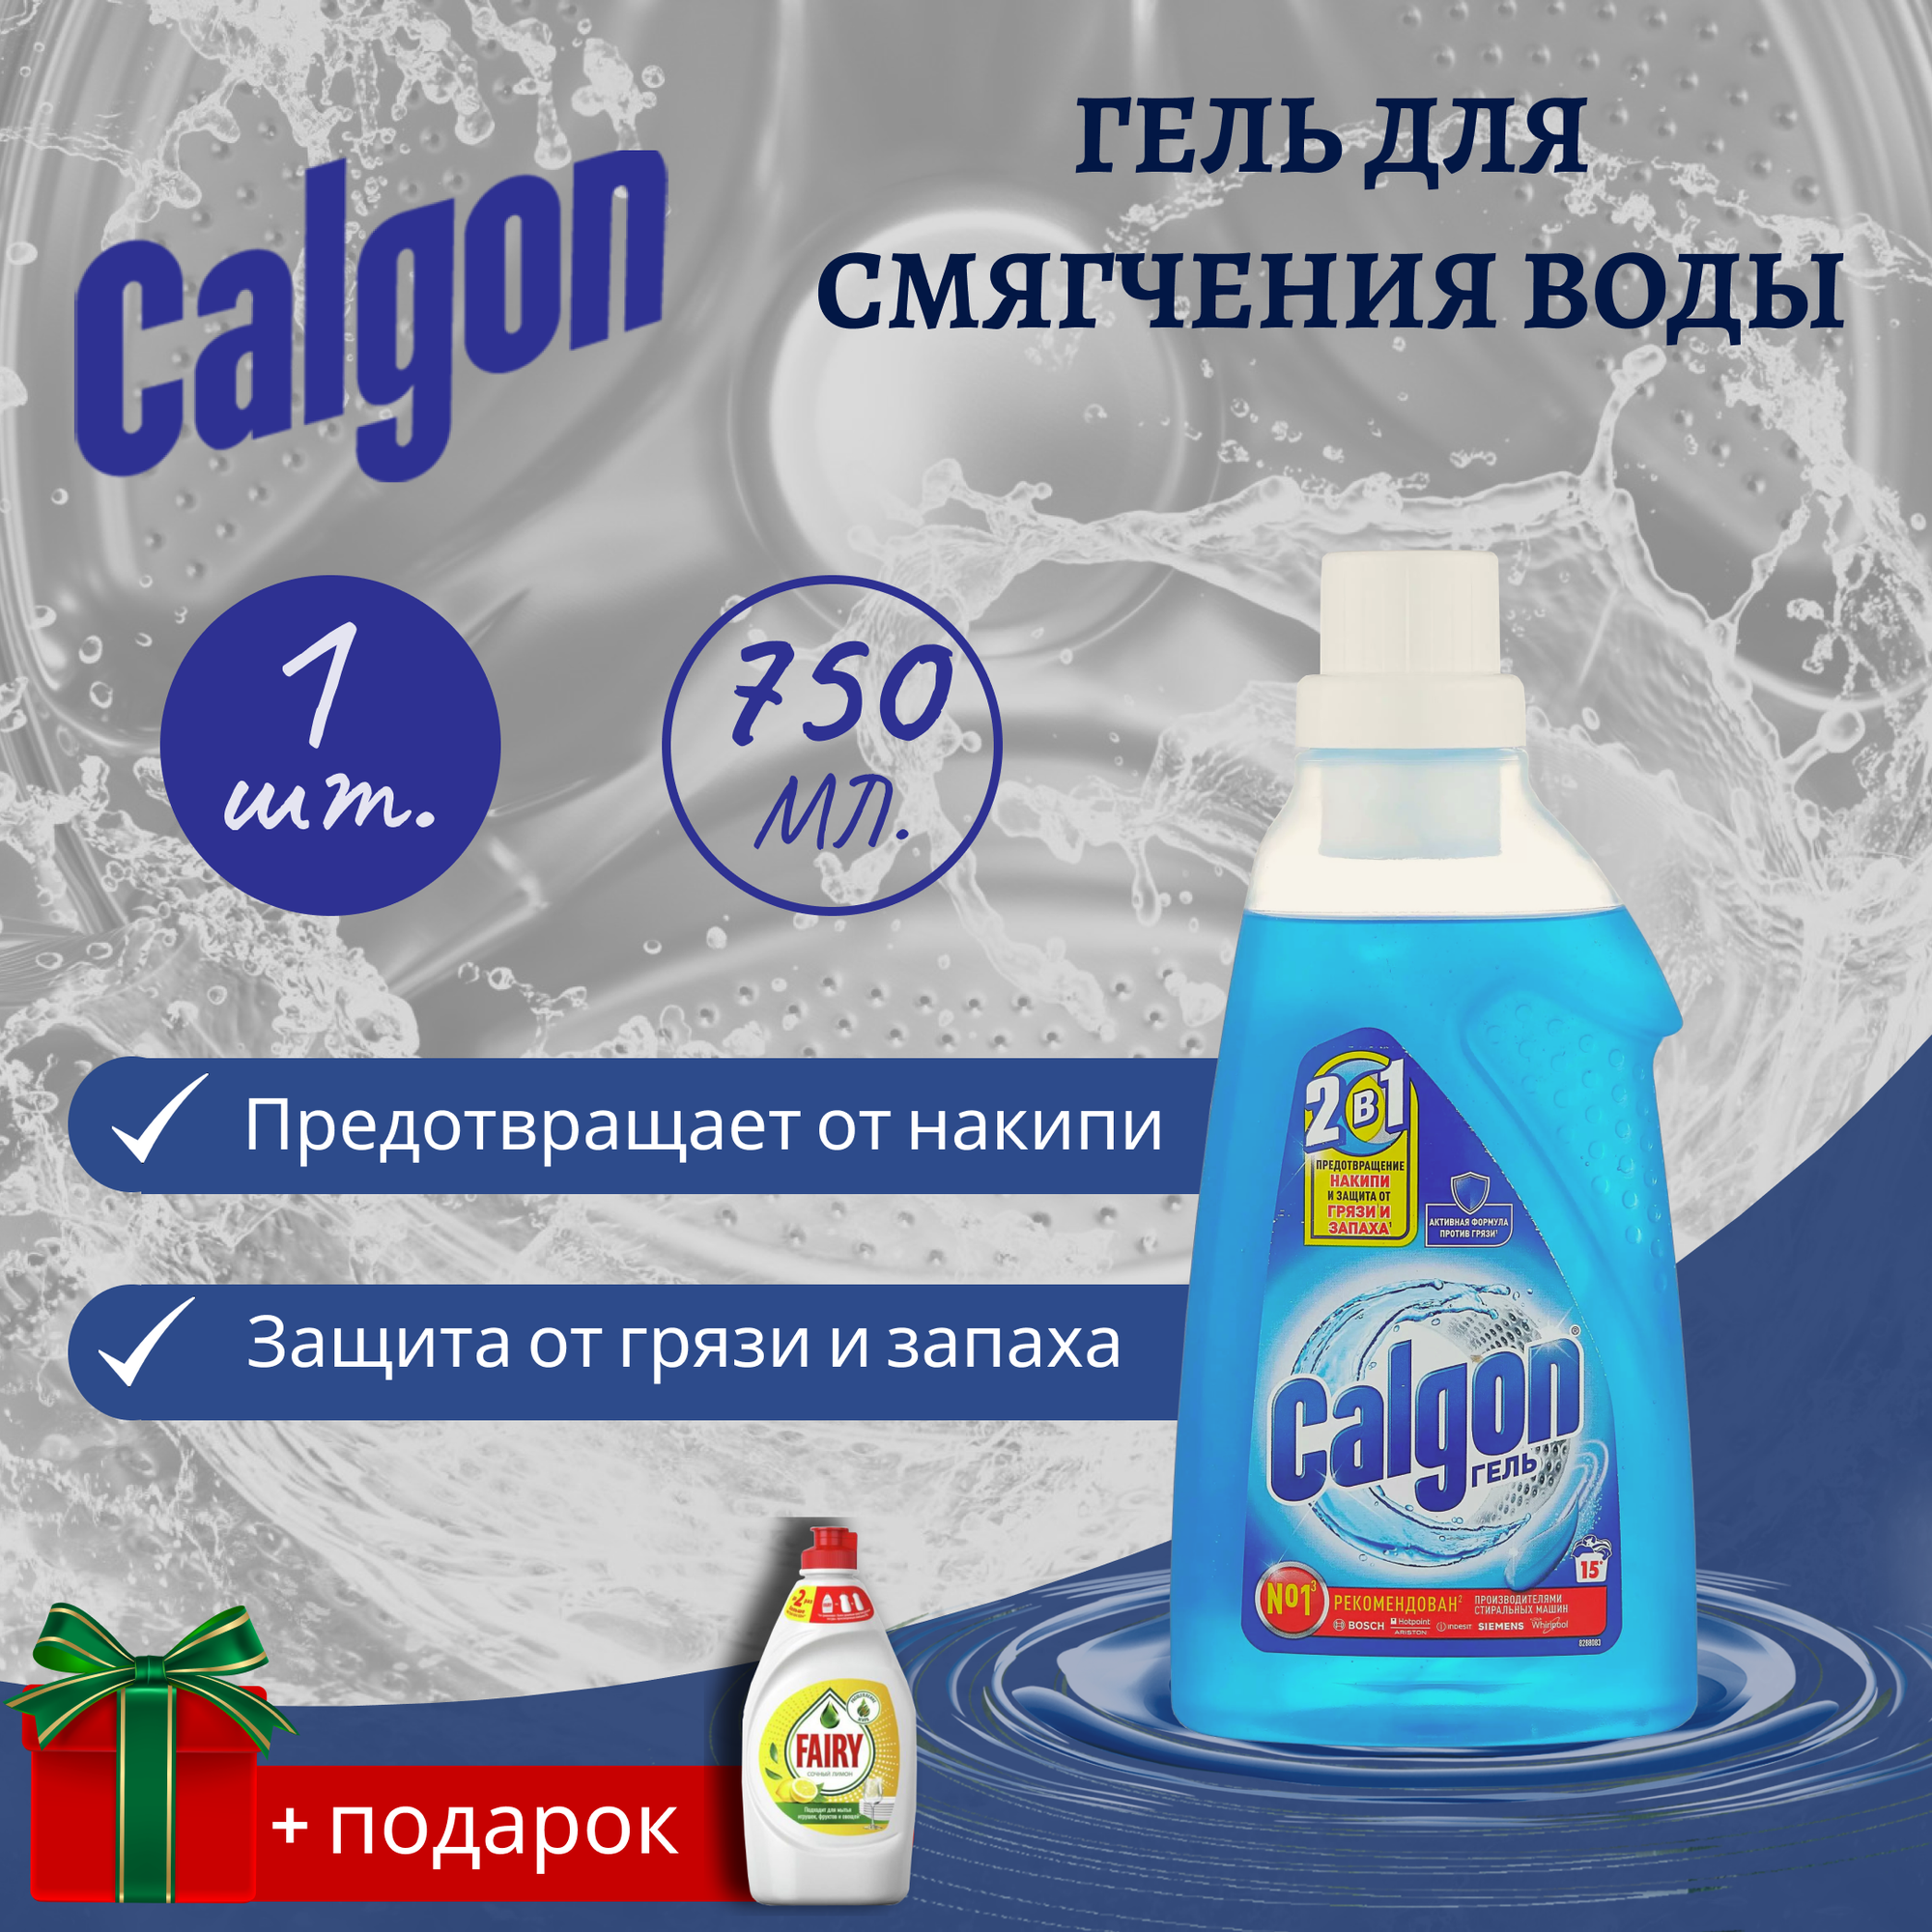 Calgon. Калгон средство, гель для смягчения воды и предотвращения образования накипи Calgon Gel,750 мл. 2в1